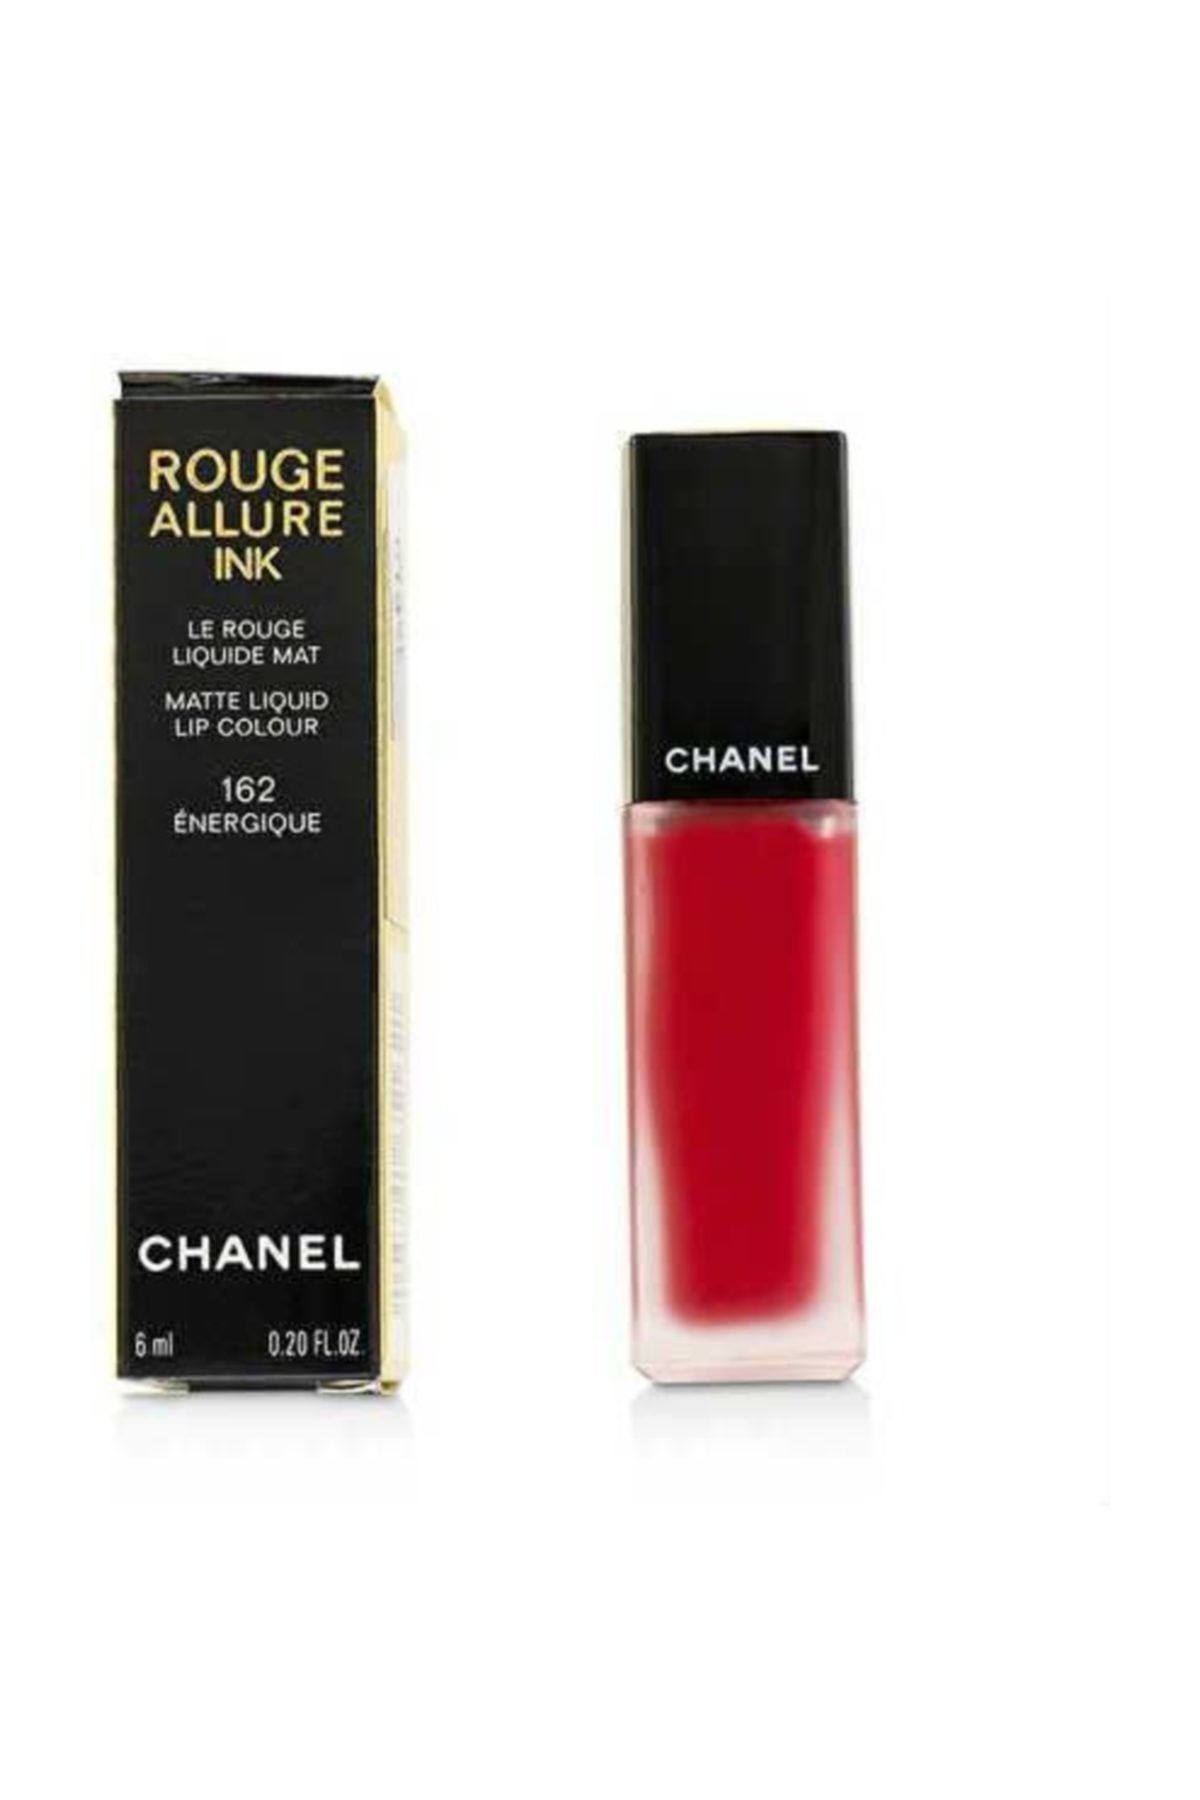 Chanel Rouge Allure Ink Matte Liquid Lip Colour 162 Energique